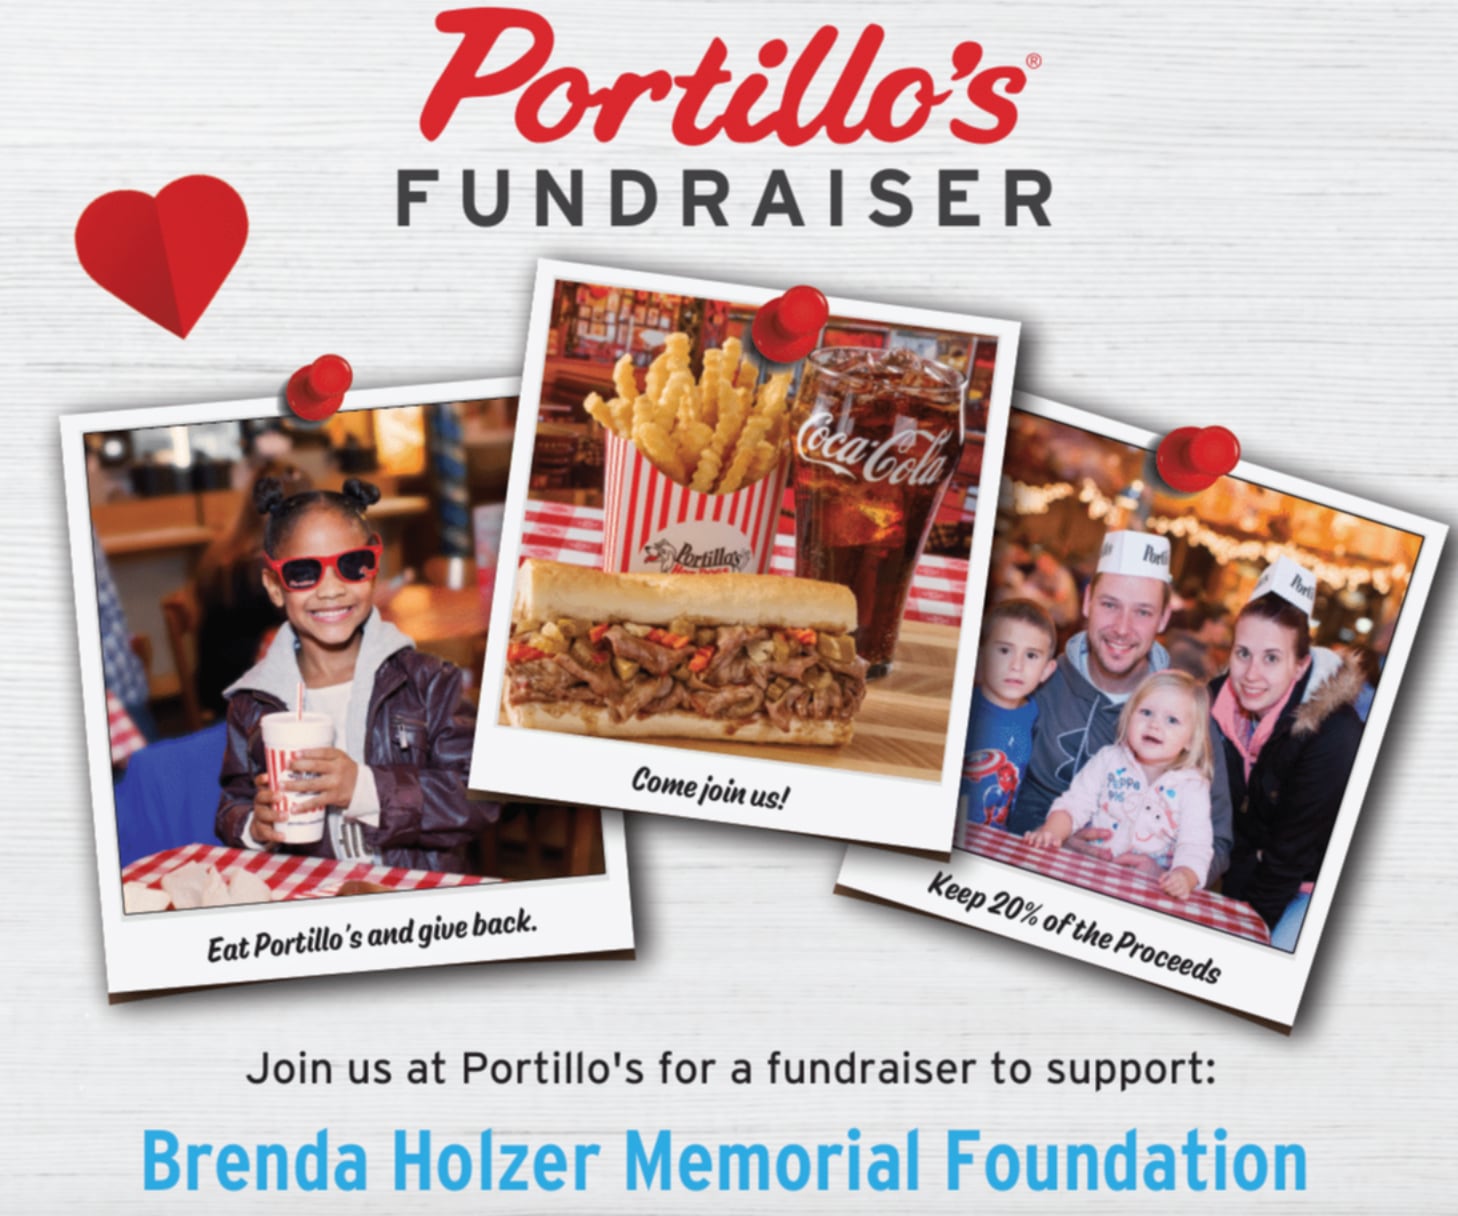 Brenda Holzer Memorial Foundation to host fundraiser at Batavia Portillo’s